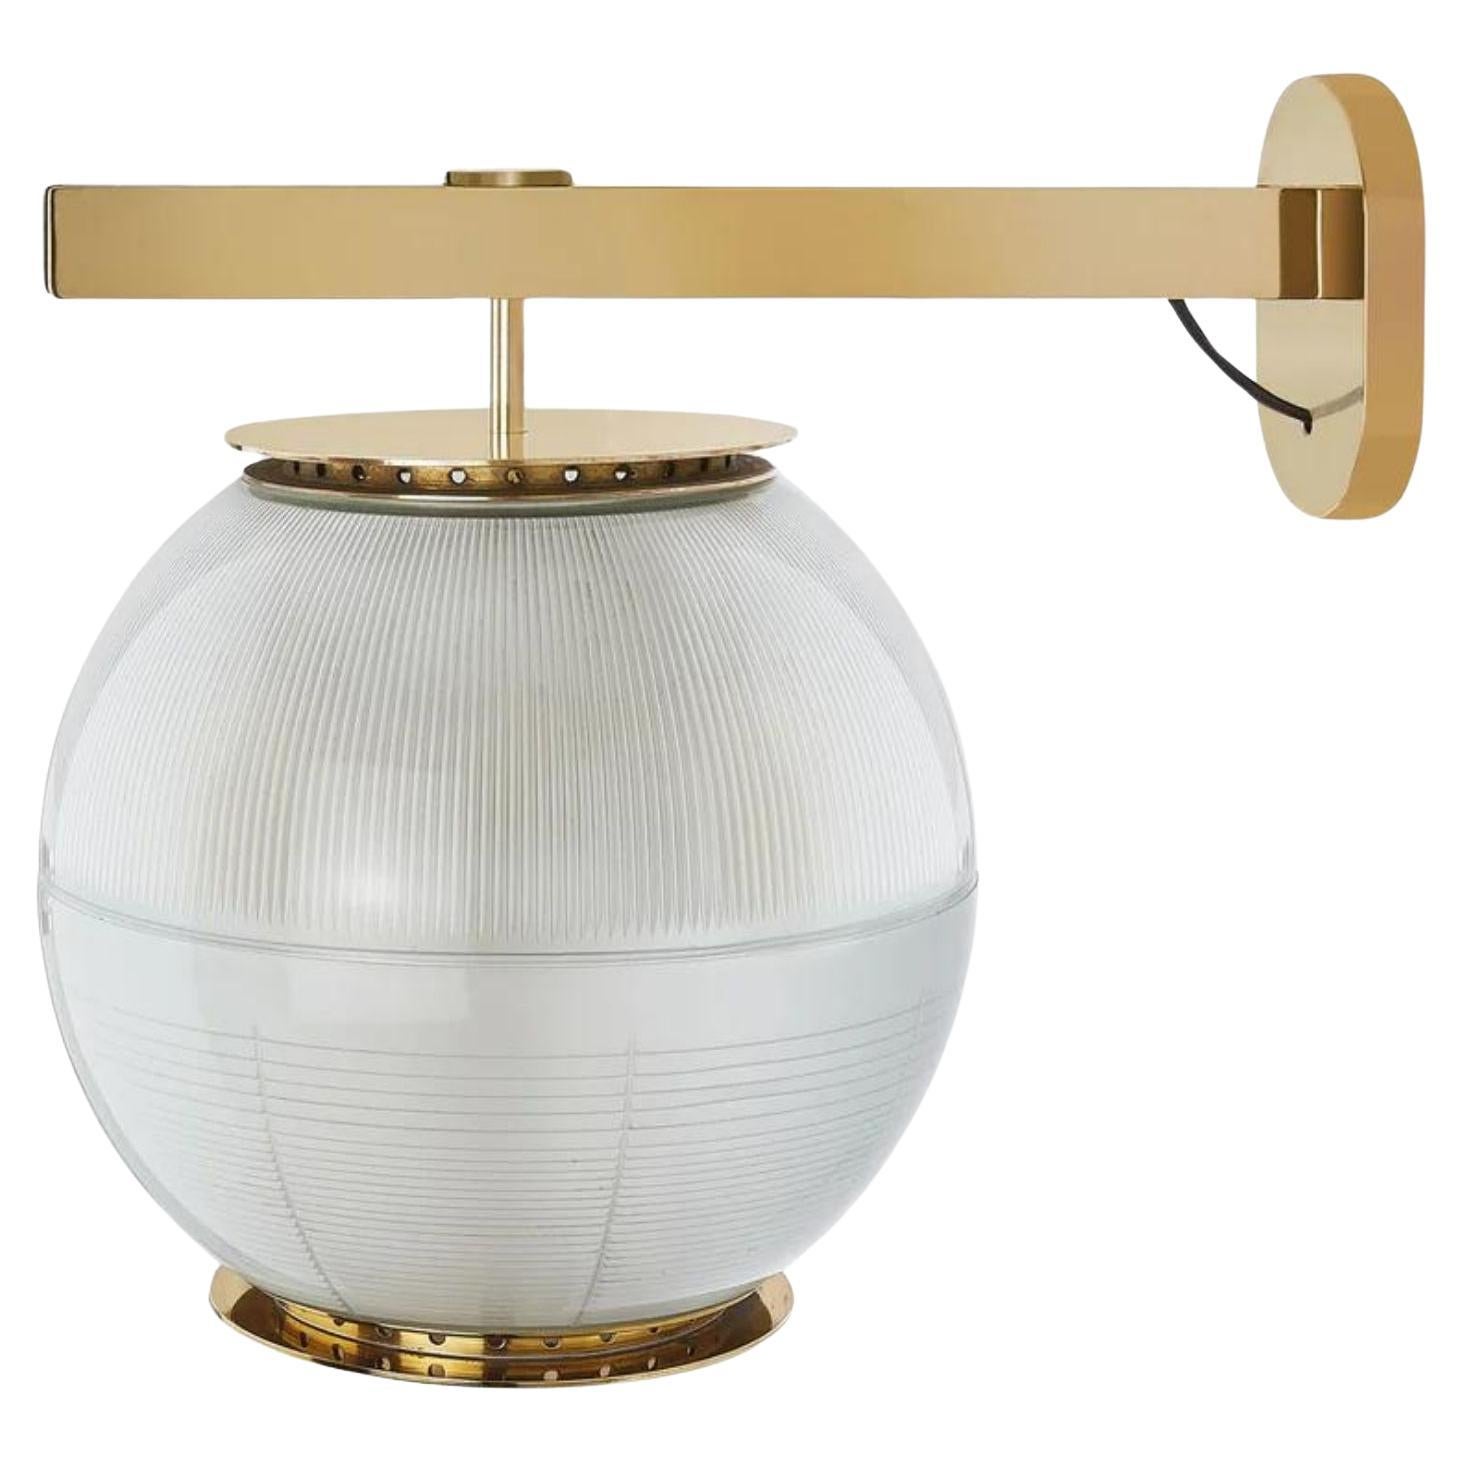 Ignazio Gardella 'Doppio Vetro' Wall Lamp in Brass and Glass for Tato Italia For Sale